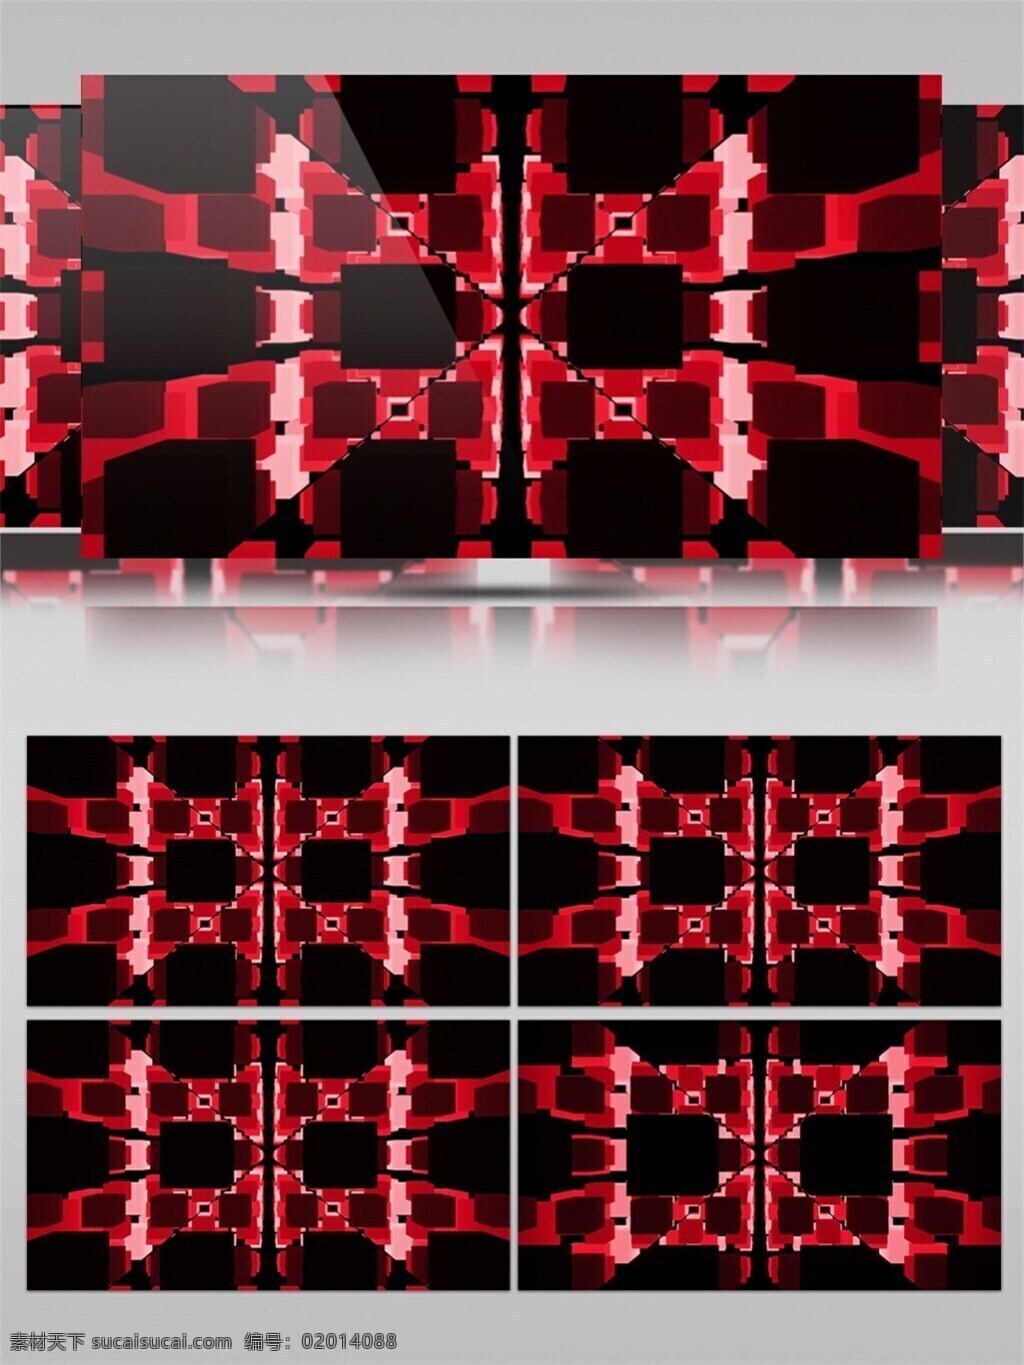 红光 迷幻 高清 视频 vj灯光 壁纸图案 动态展示 背景 红色光花 立体几何 特效 炫酷华丽 装饰风格